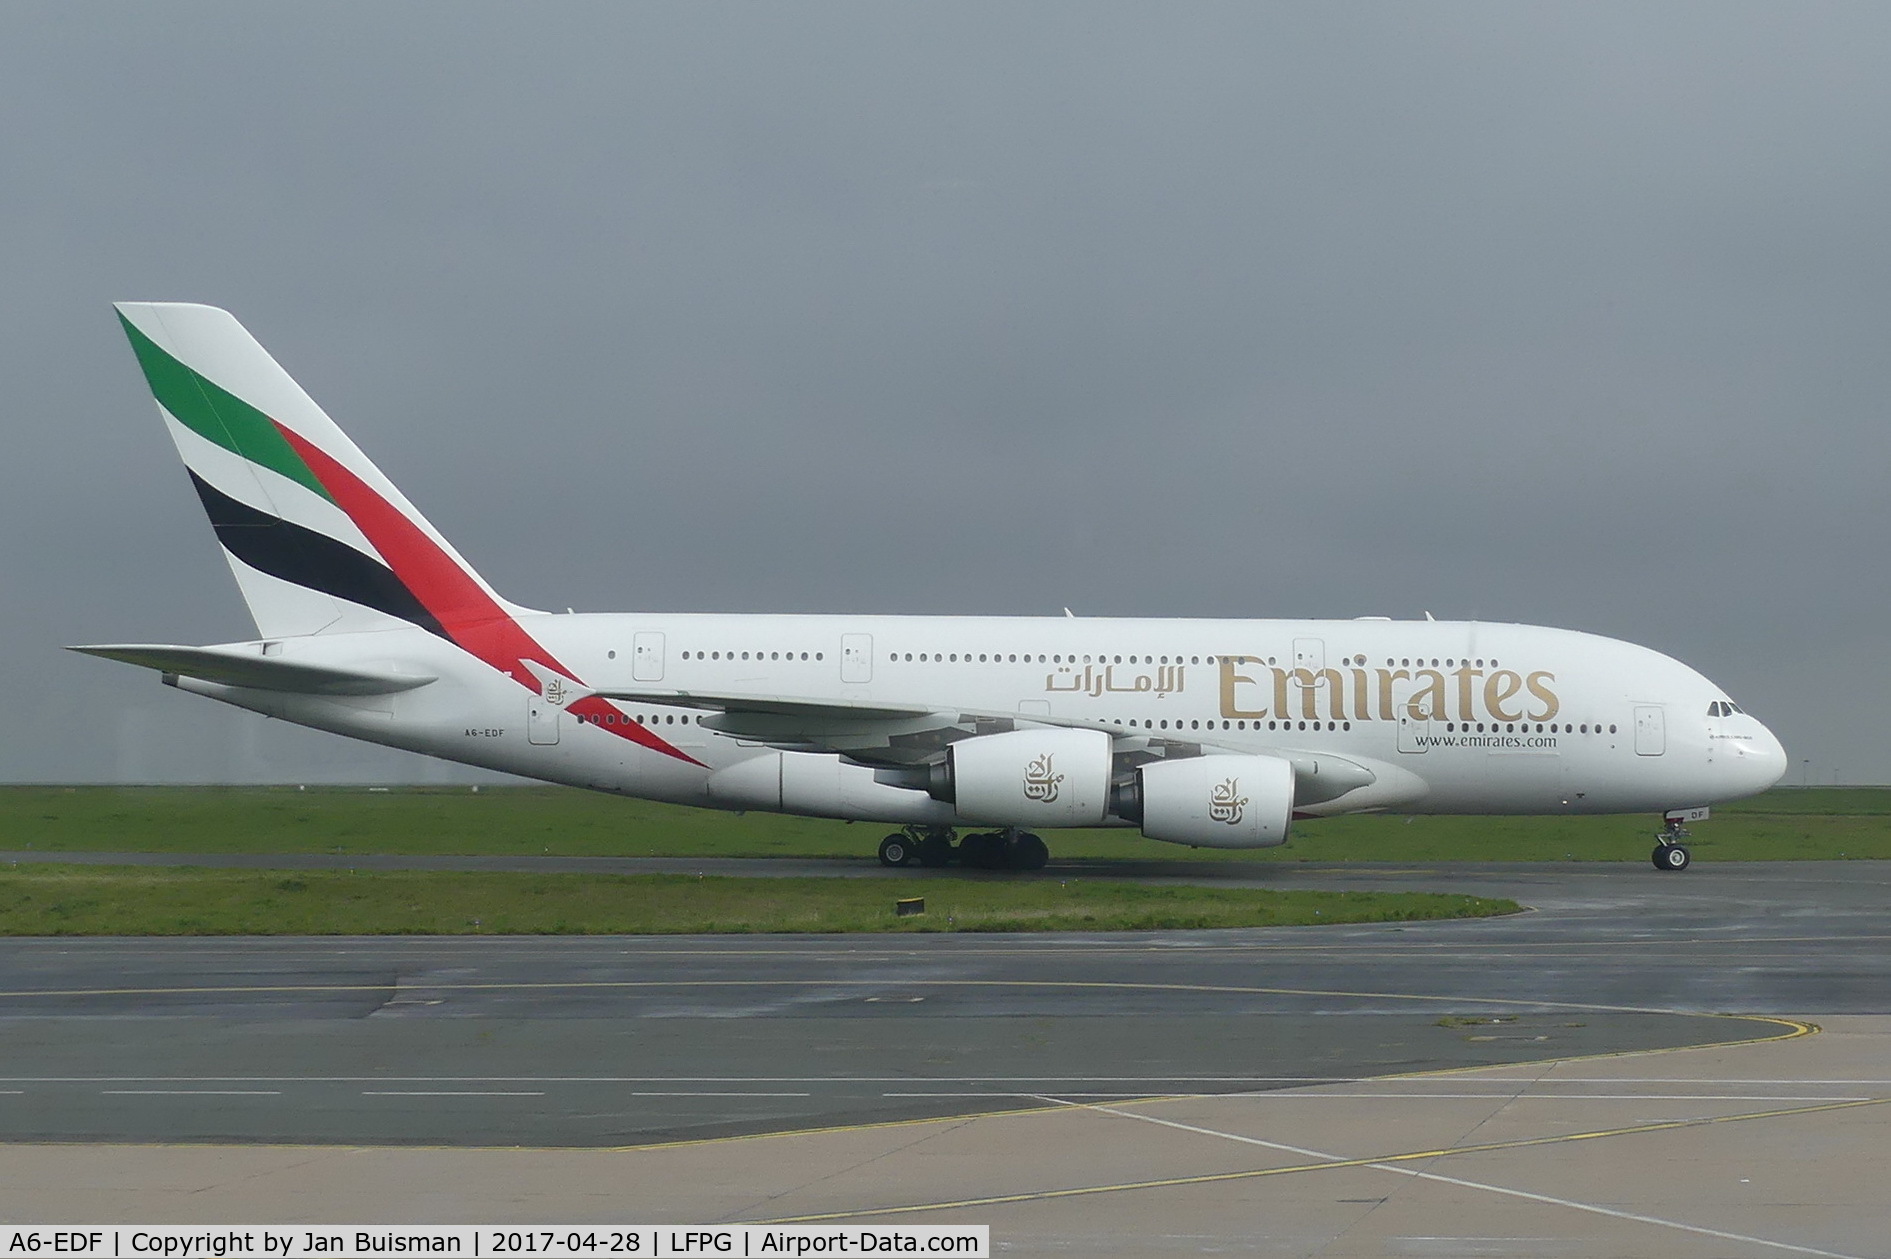 A6-EDF, 2006 Airbus A380-861 C/N 007, Emirates Ailines